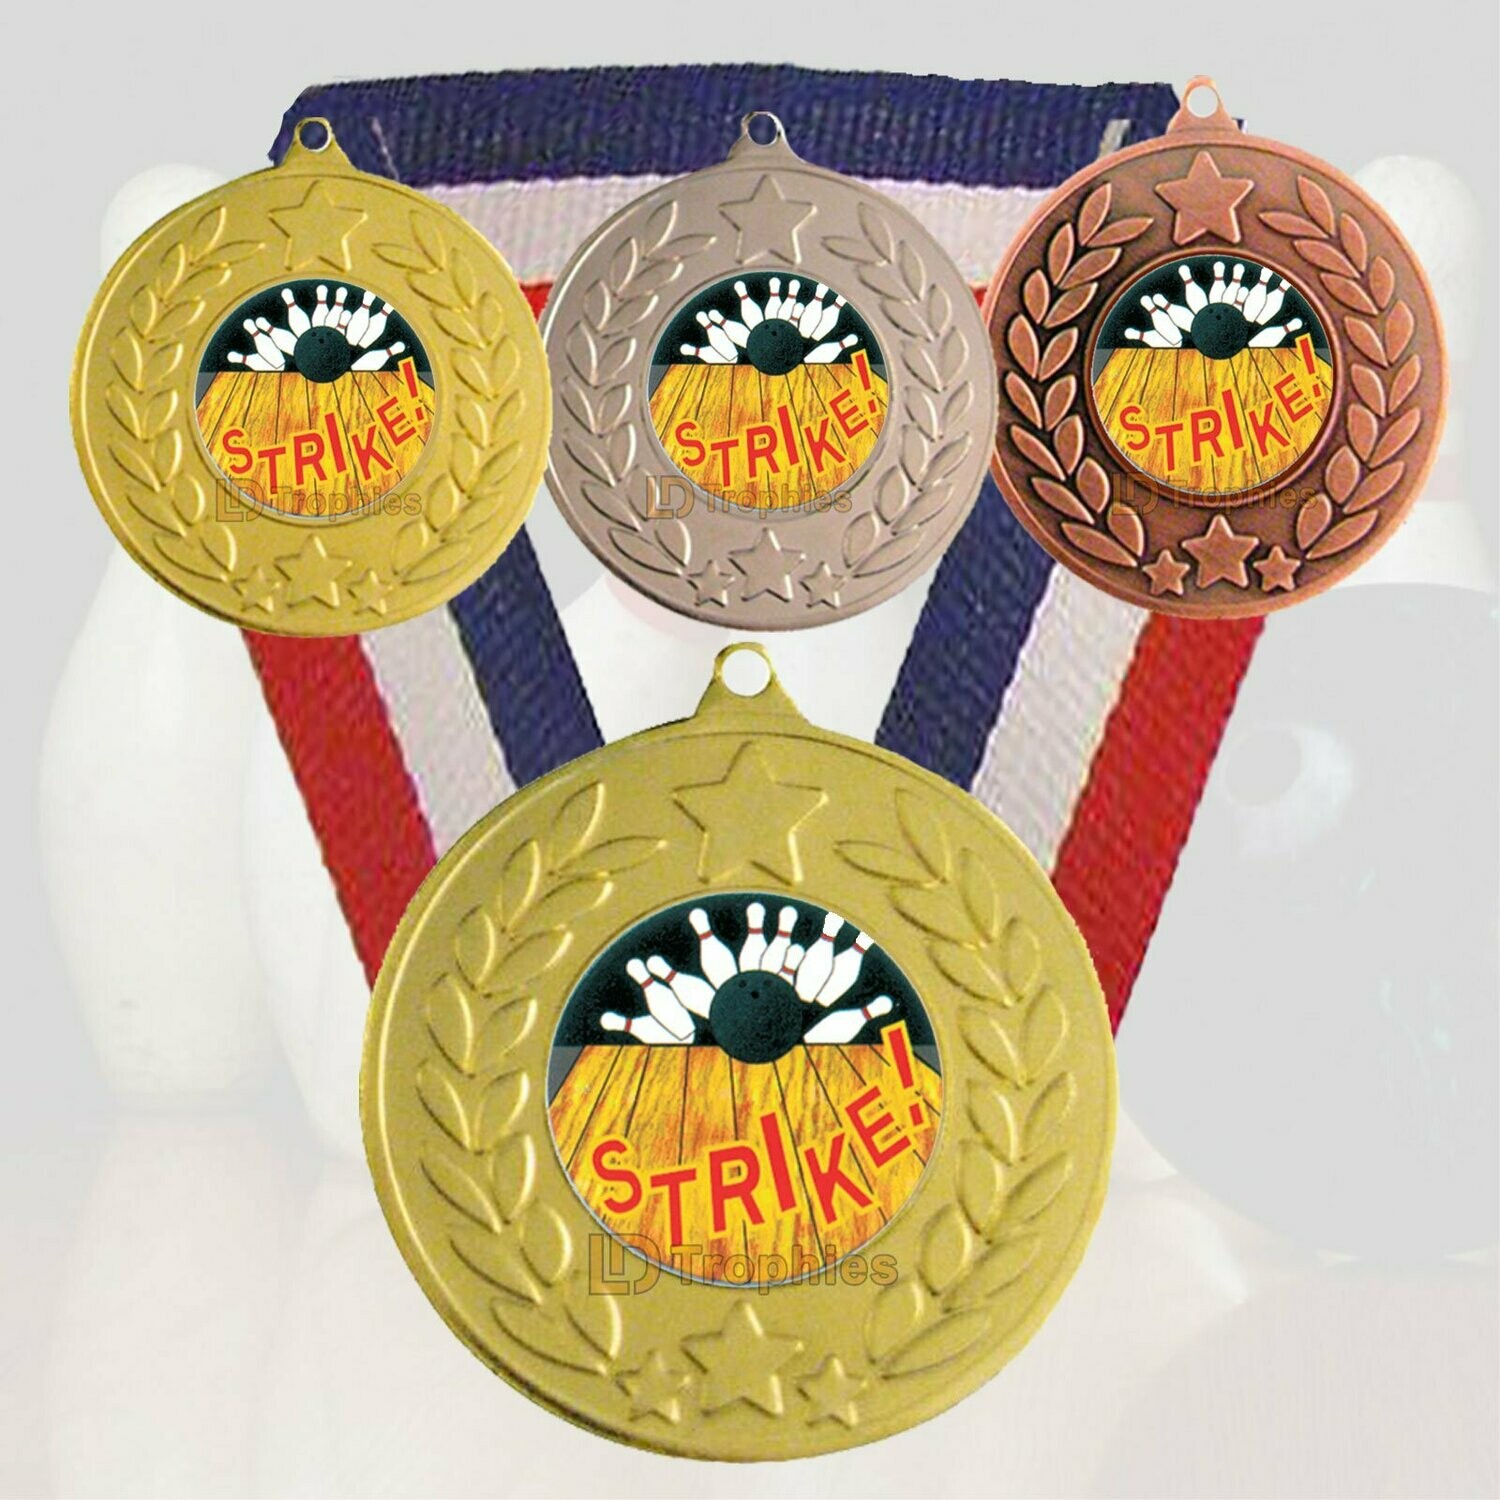 Ten Pin Bowling Strike Medal & Ribbon